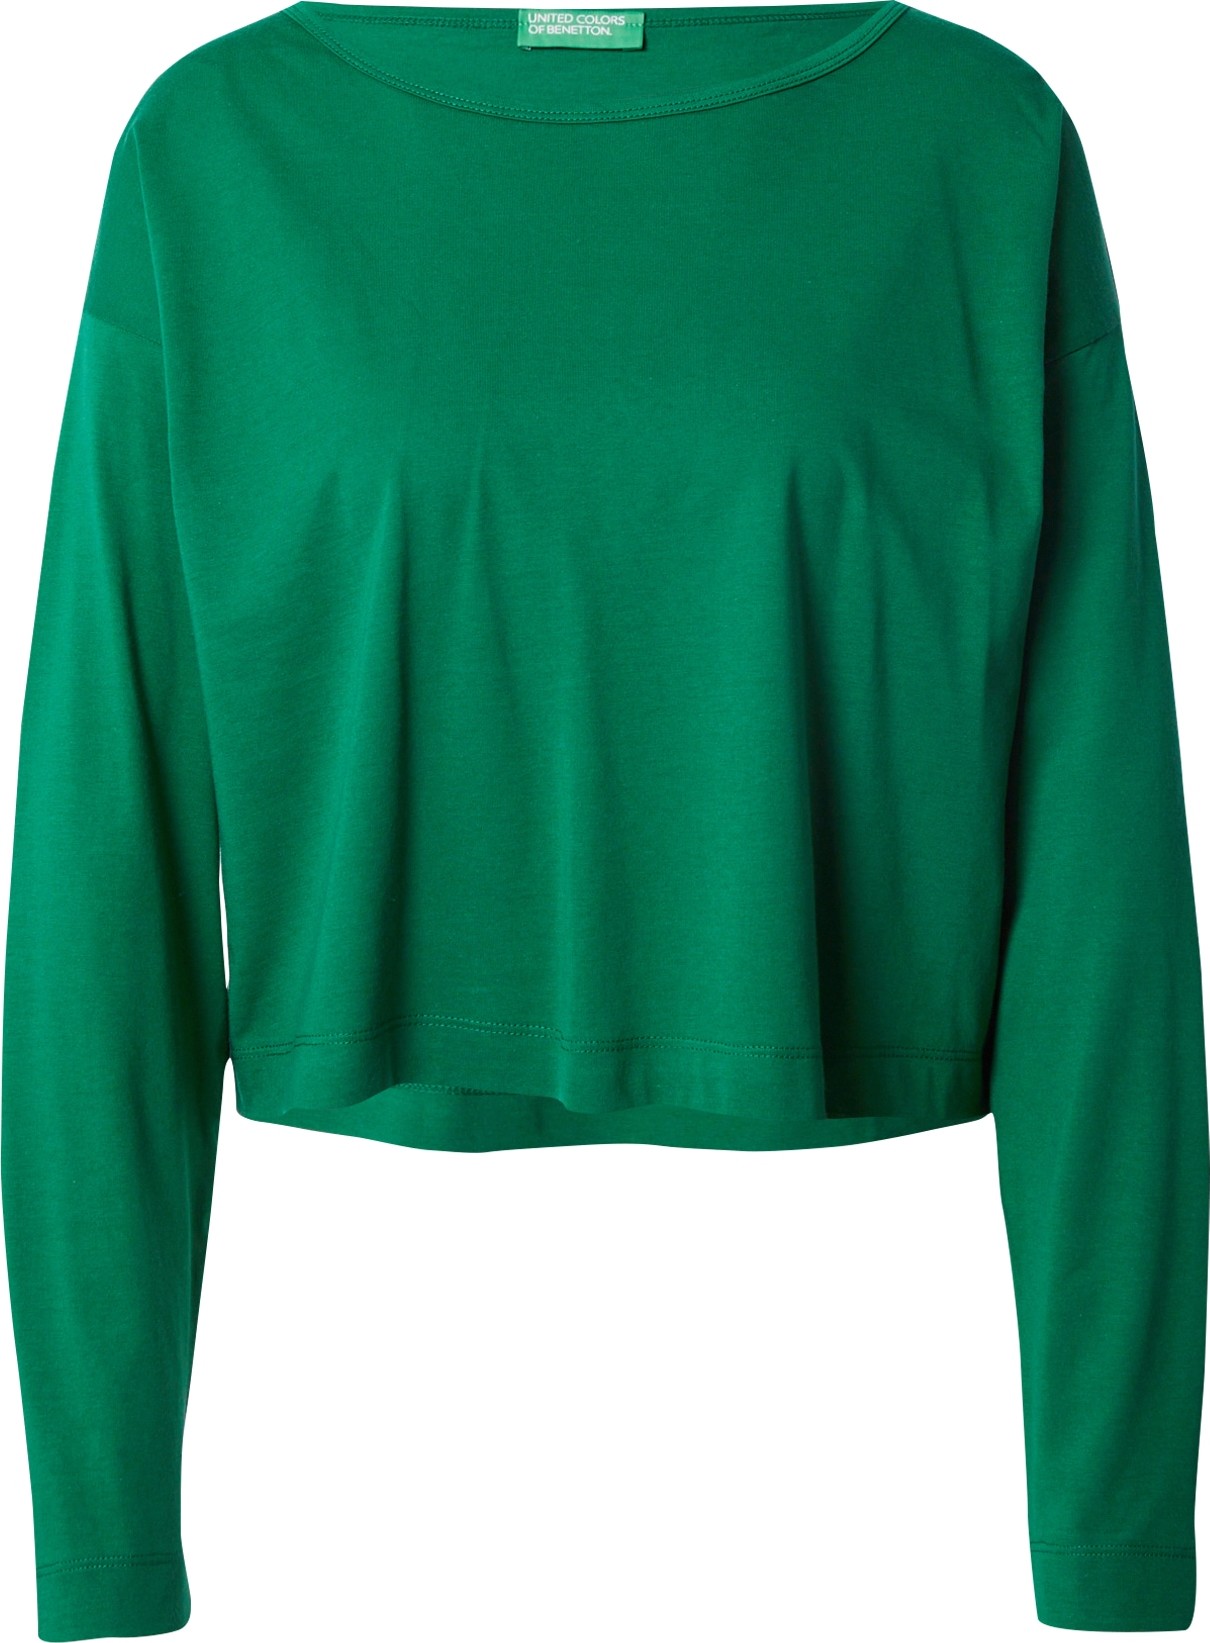 Tričko United Colors of Benetton trávově zelená